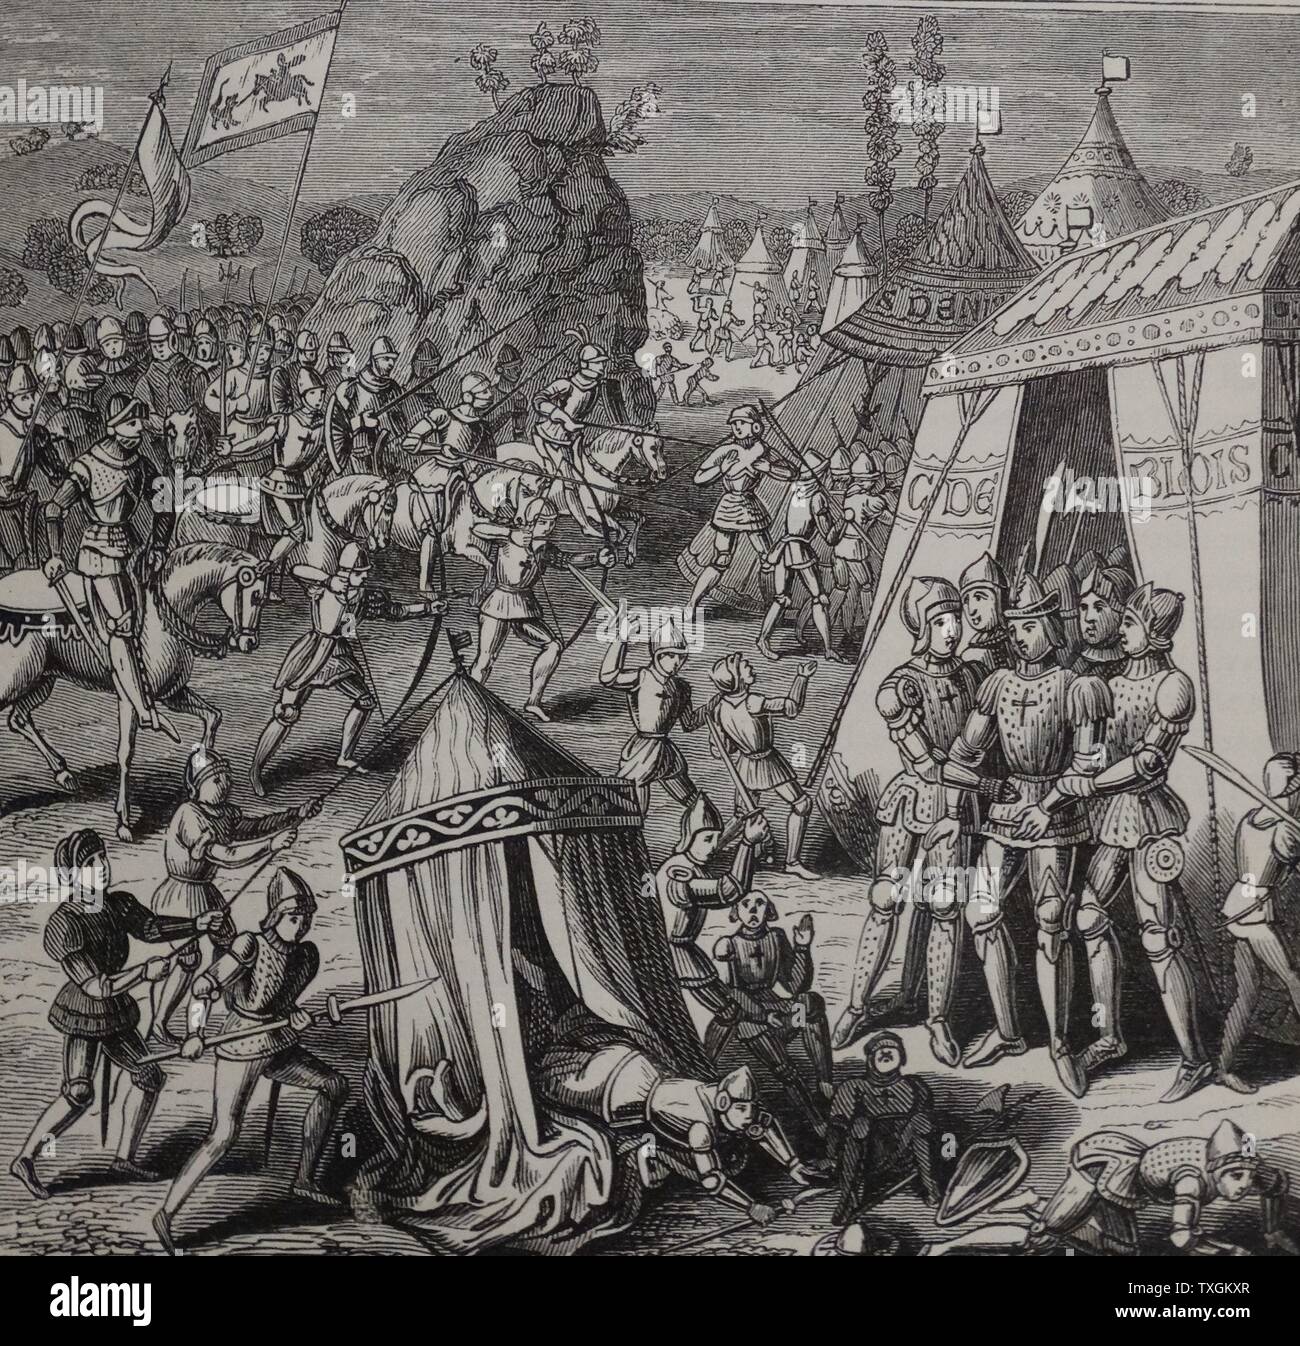 Darstellung der Schlacht von La Roche-Derrien Gravur, gekämpft zwischen den französischen und englischen Truppen während des Hundertjährigen Krieges. Vom 14. Jahrhundert Stockfoto